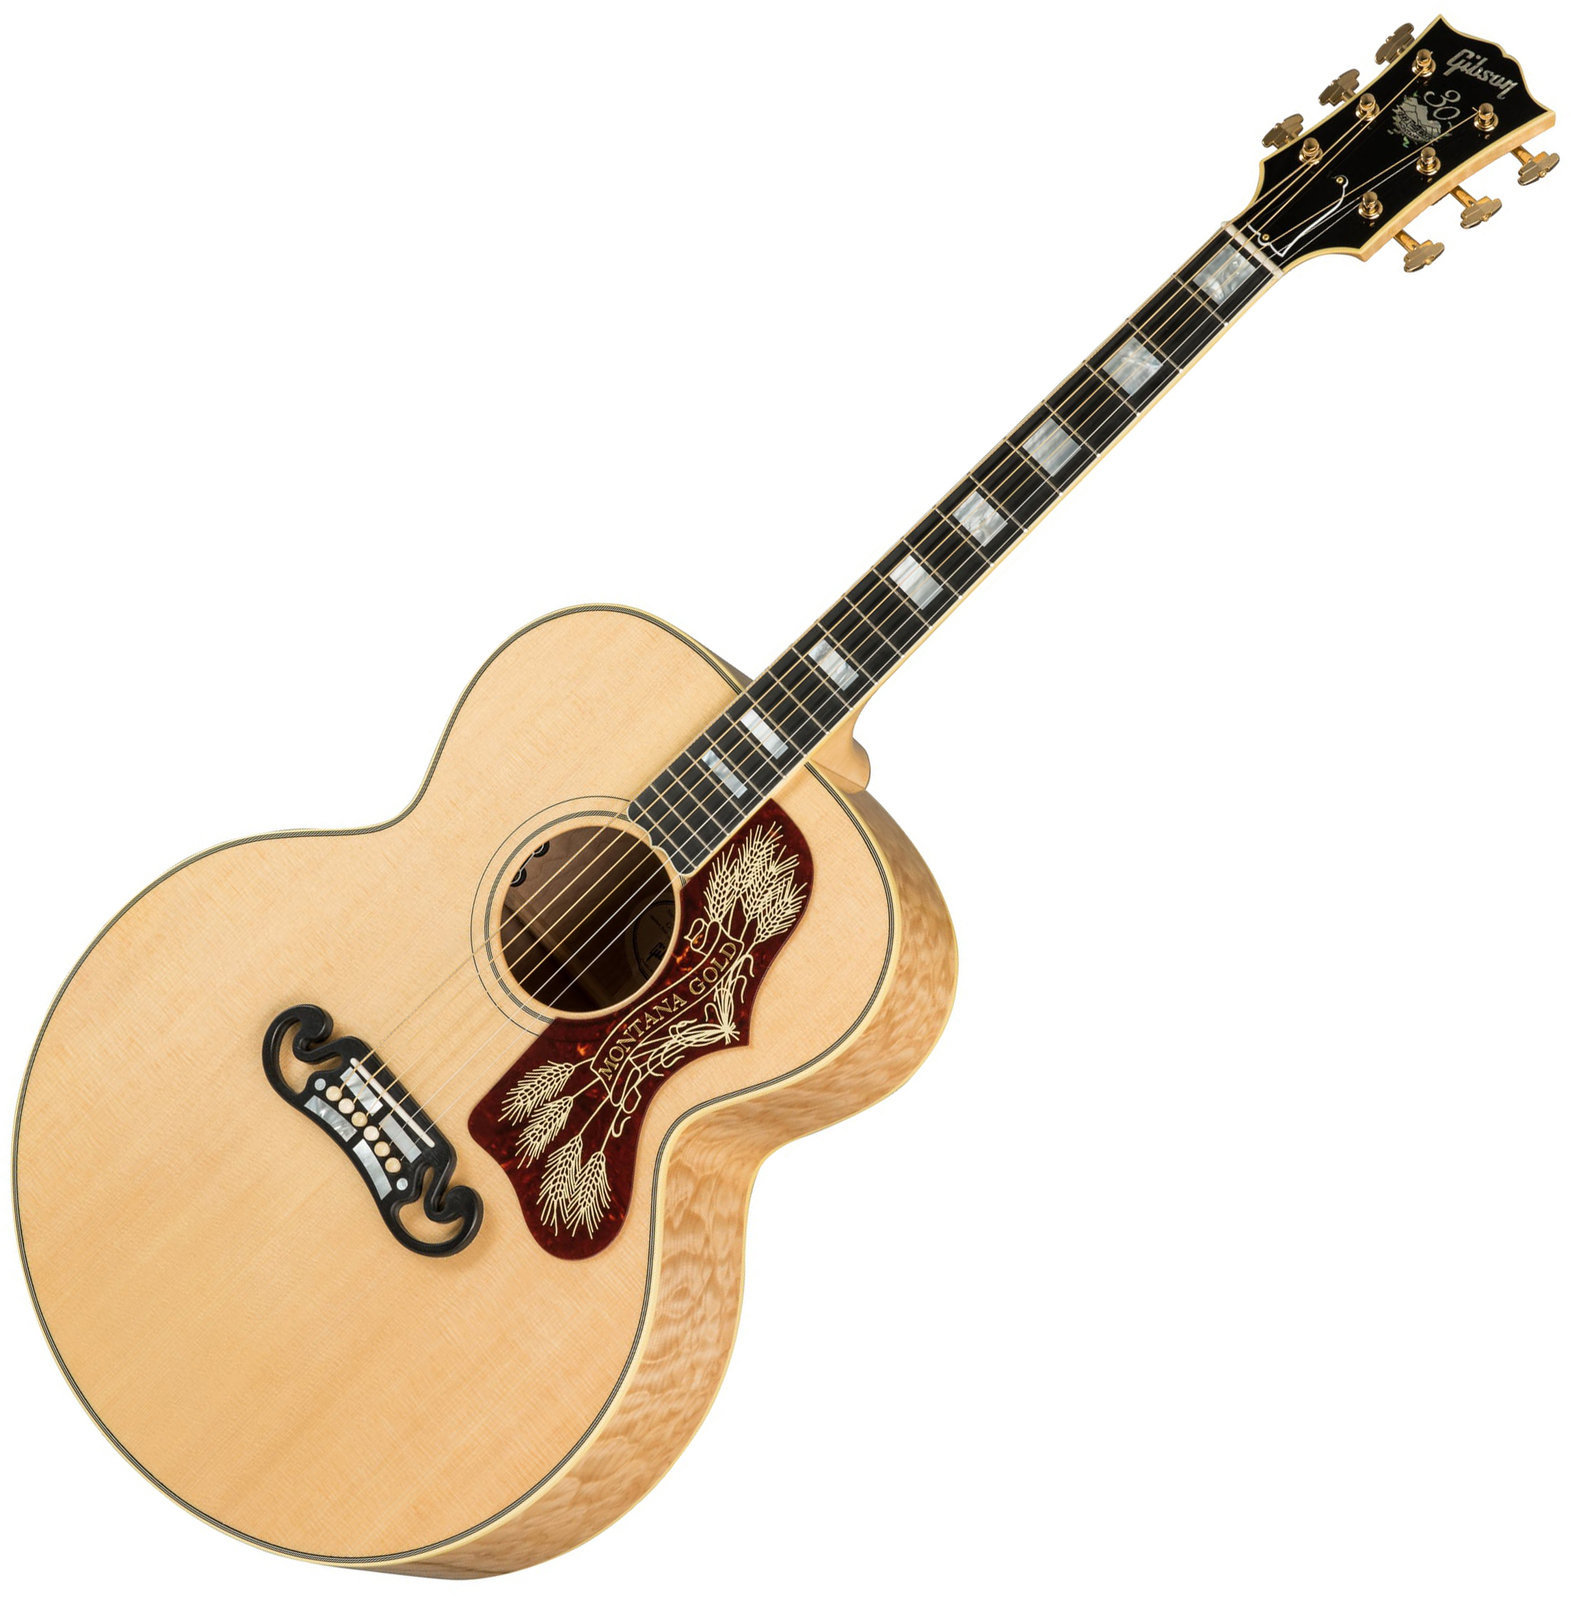 Jumbo elektro-akoestische gitaar Gibson Montana Gold 2019 Antique Natural